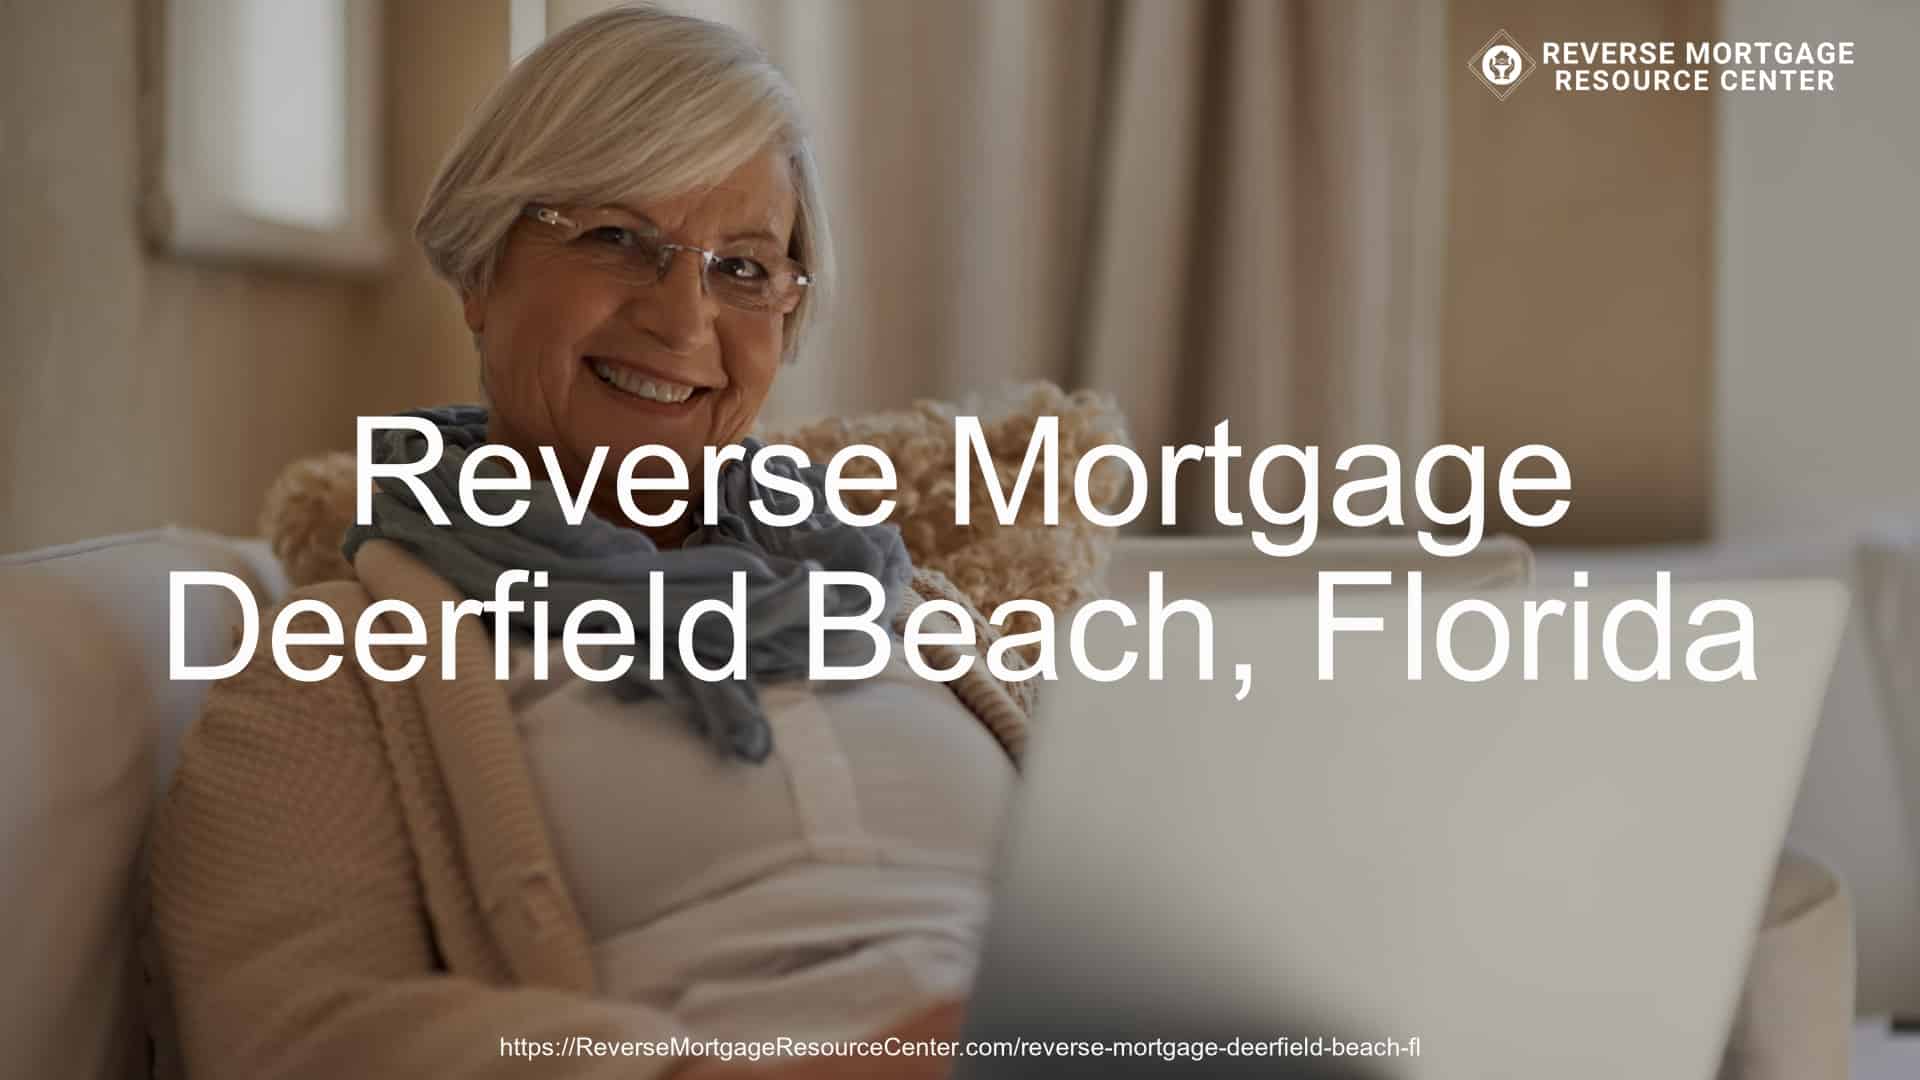 Reverse Mortgage Loans in Deerfield Beach Florida